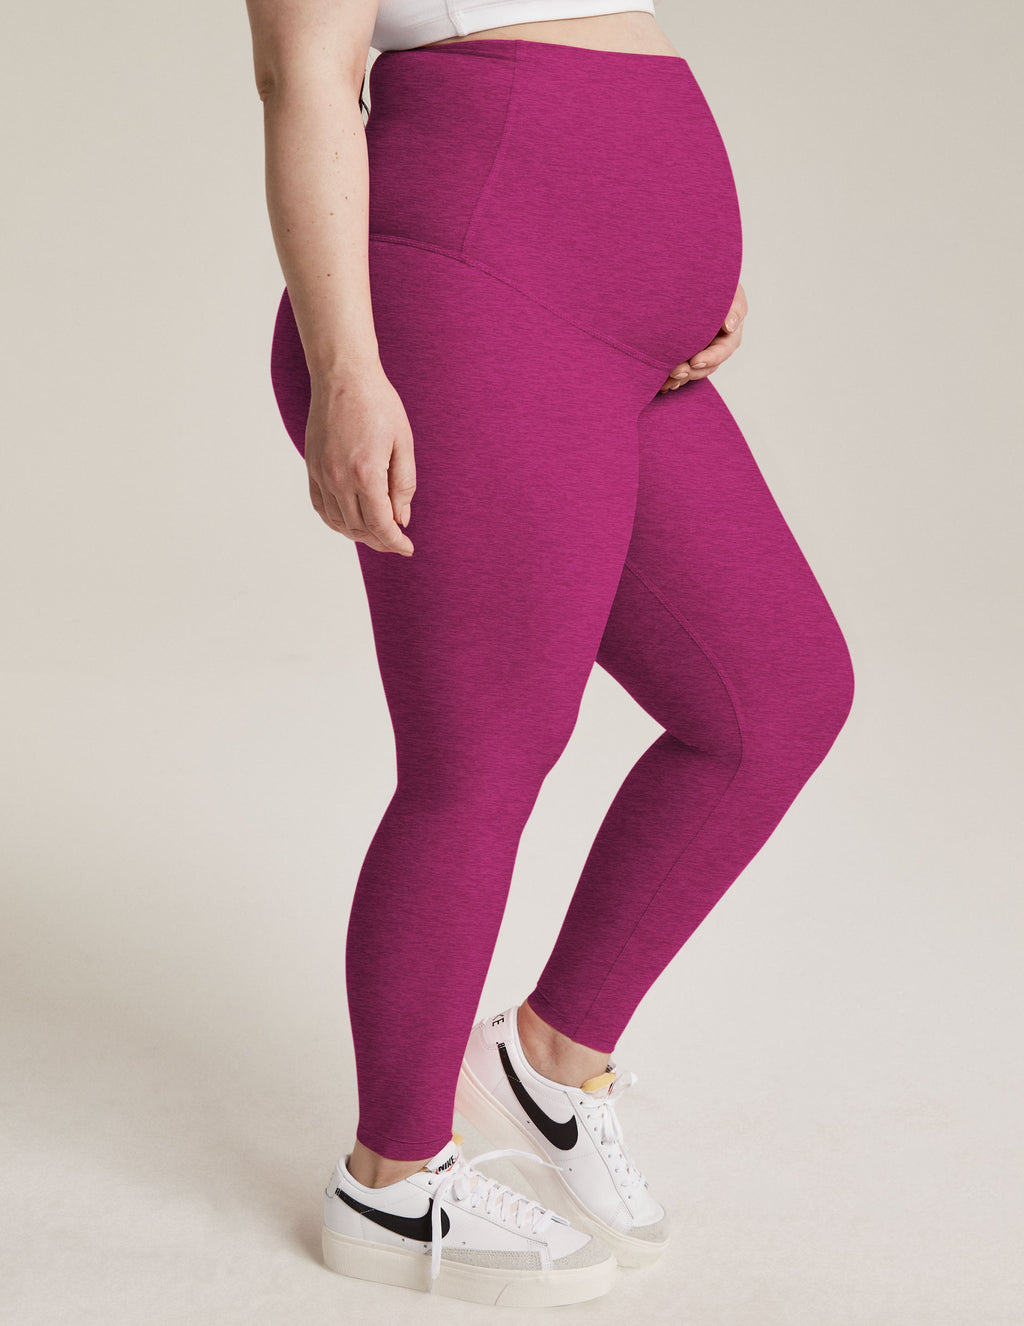 Buy Maternity Leggings - Pink